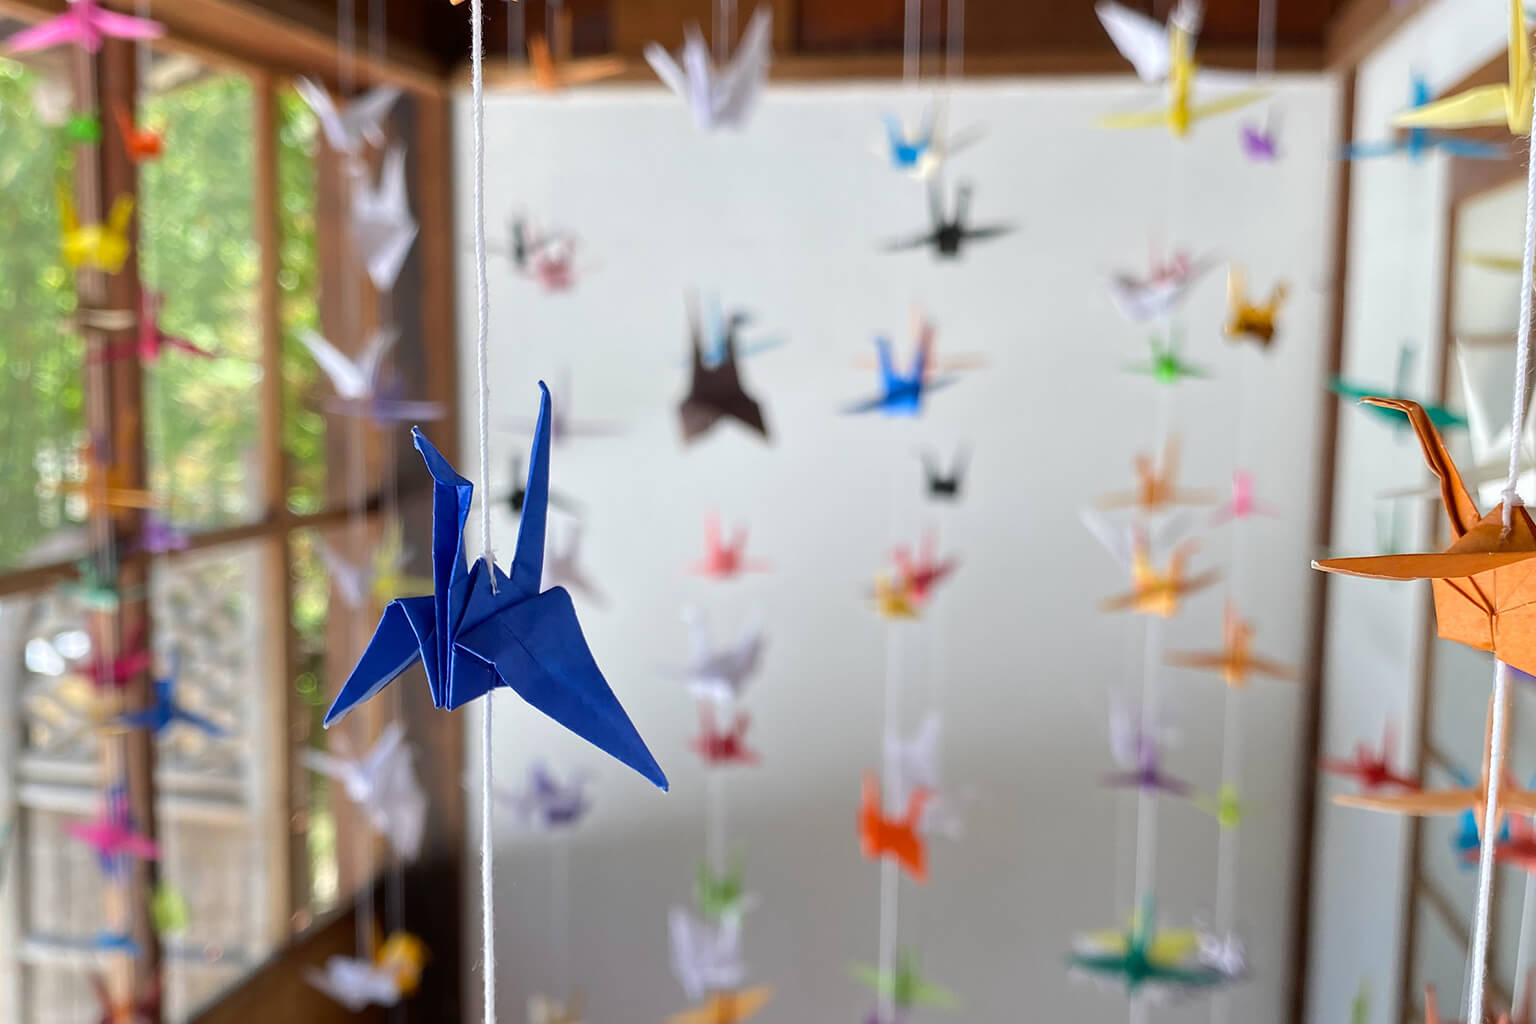 Origami cranes are popular decorations